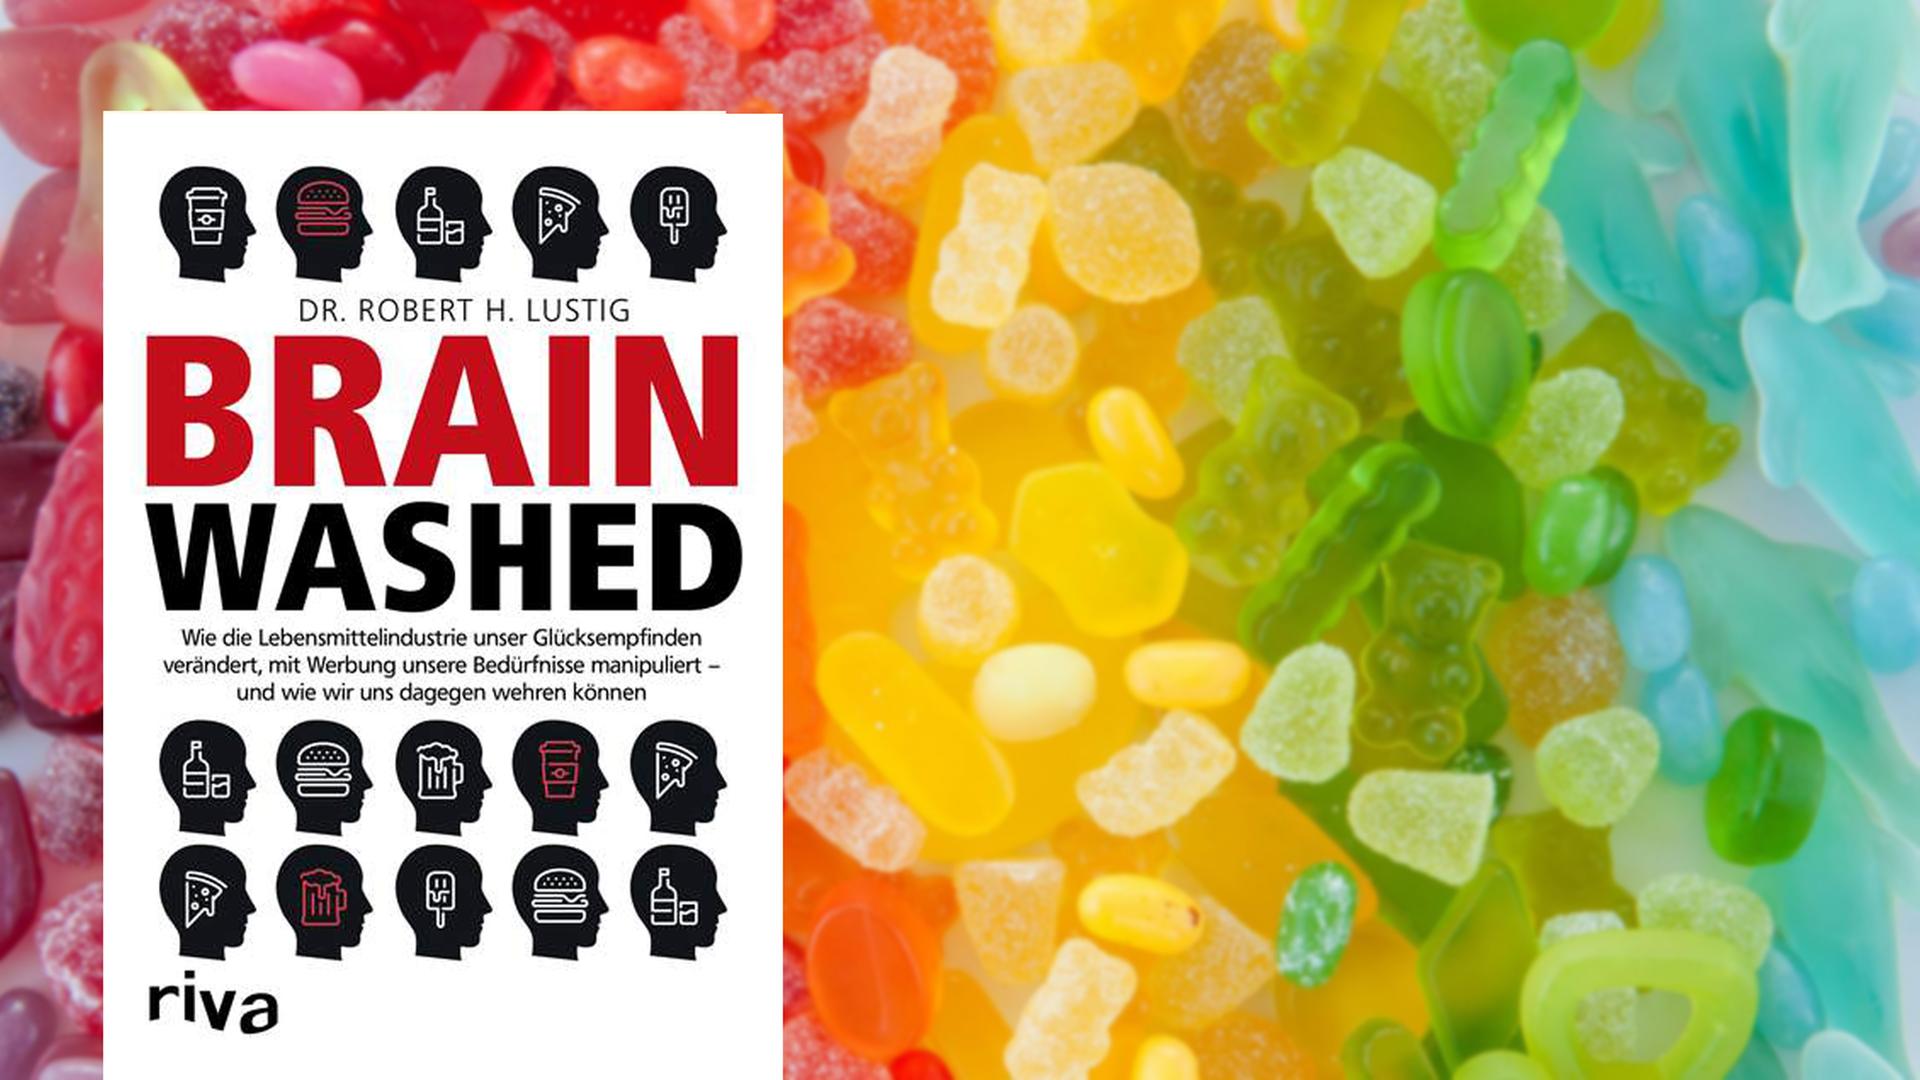 Cover von Robert H. Lustig "Brainwashed", im Hintergrund sind bunte Süßigkeiten zu sehen